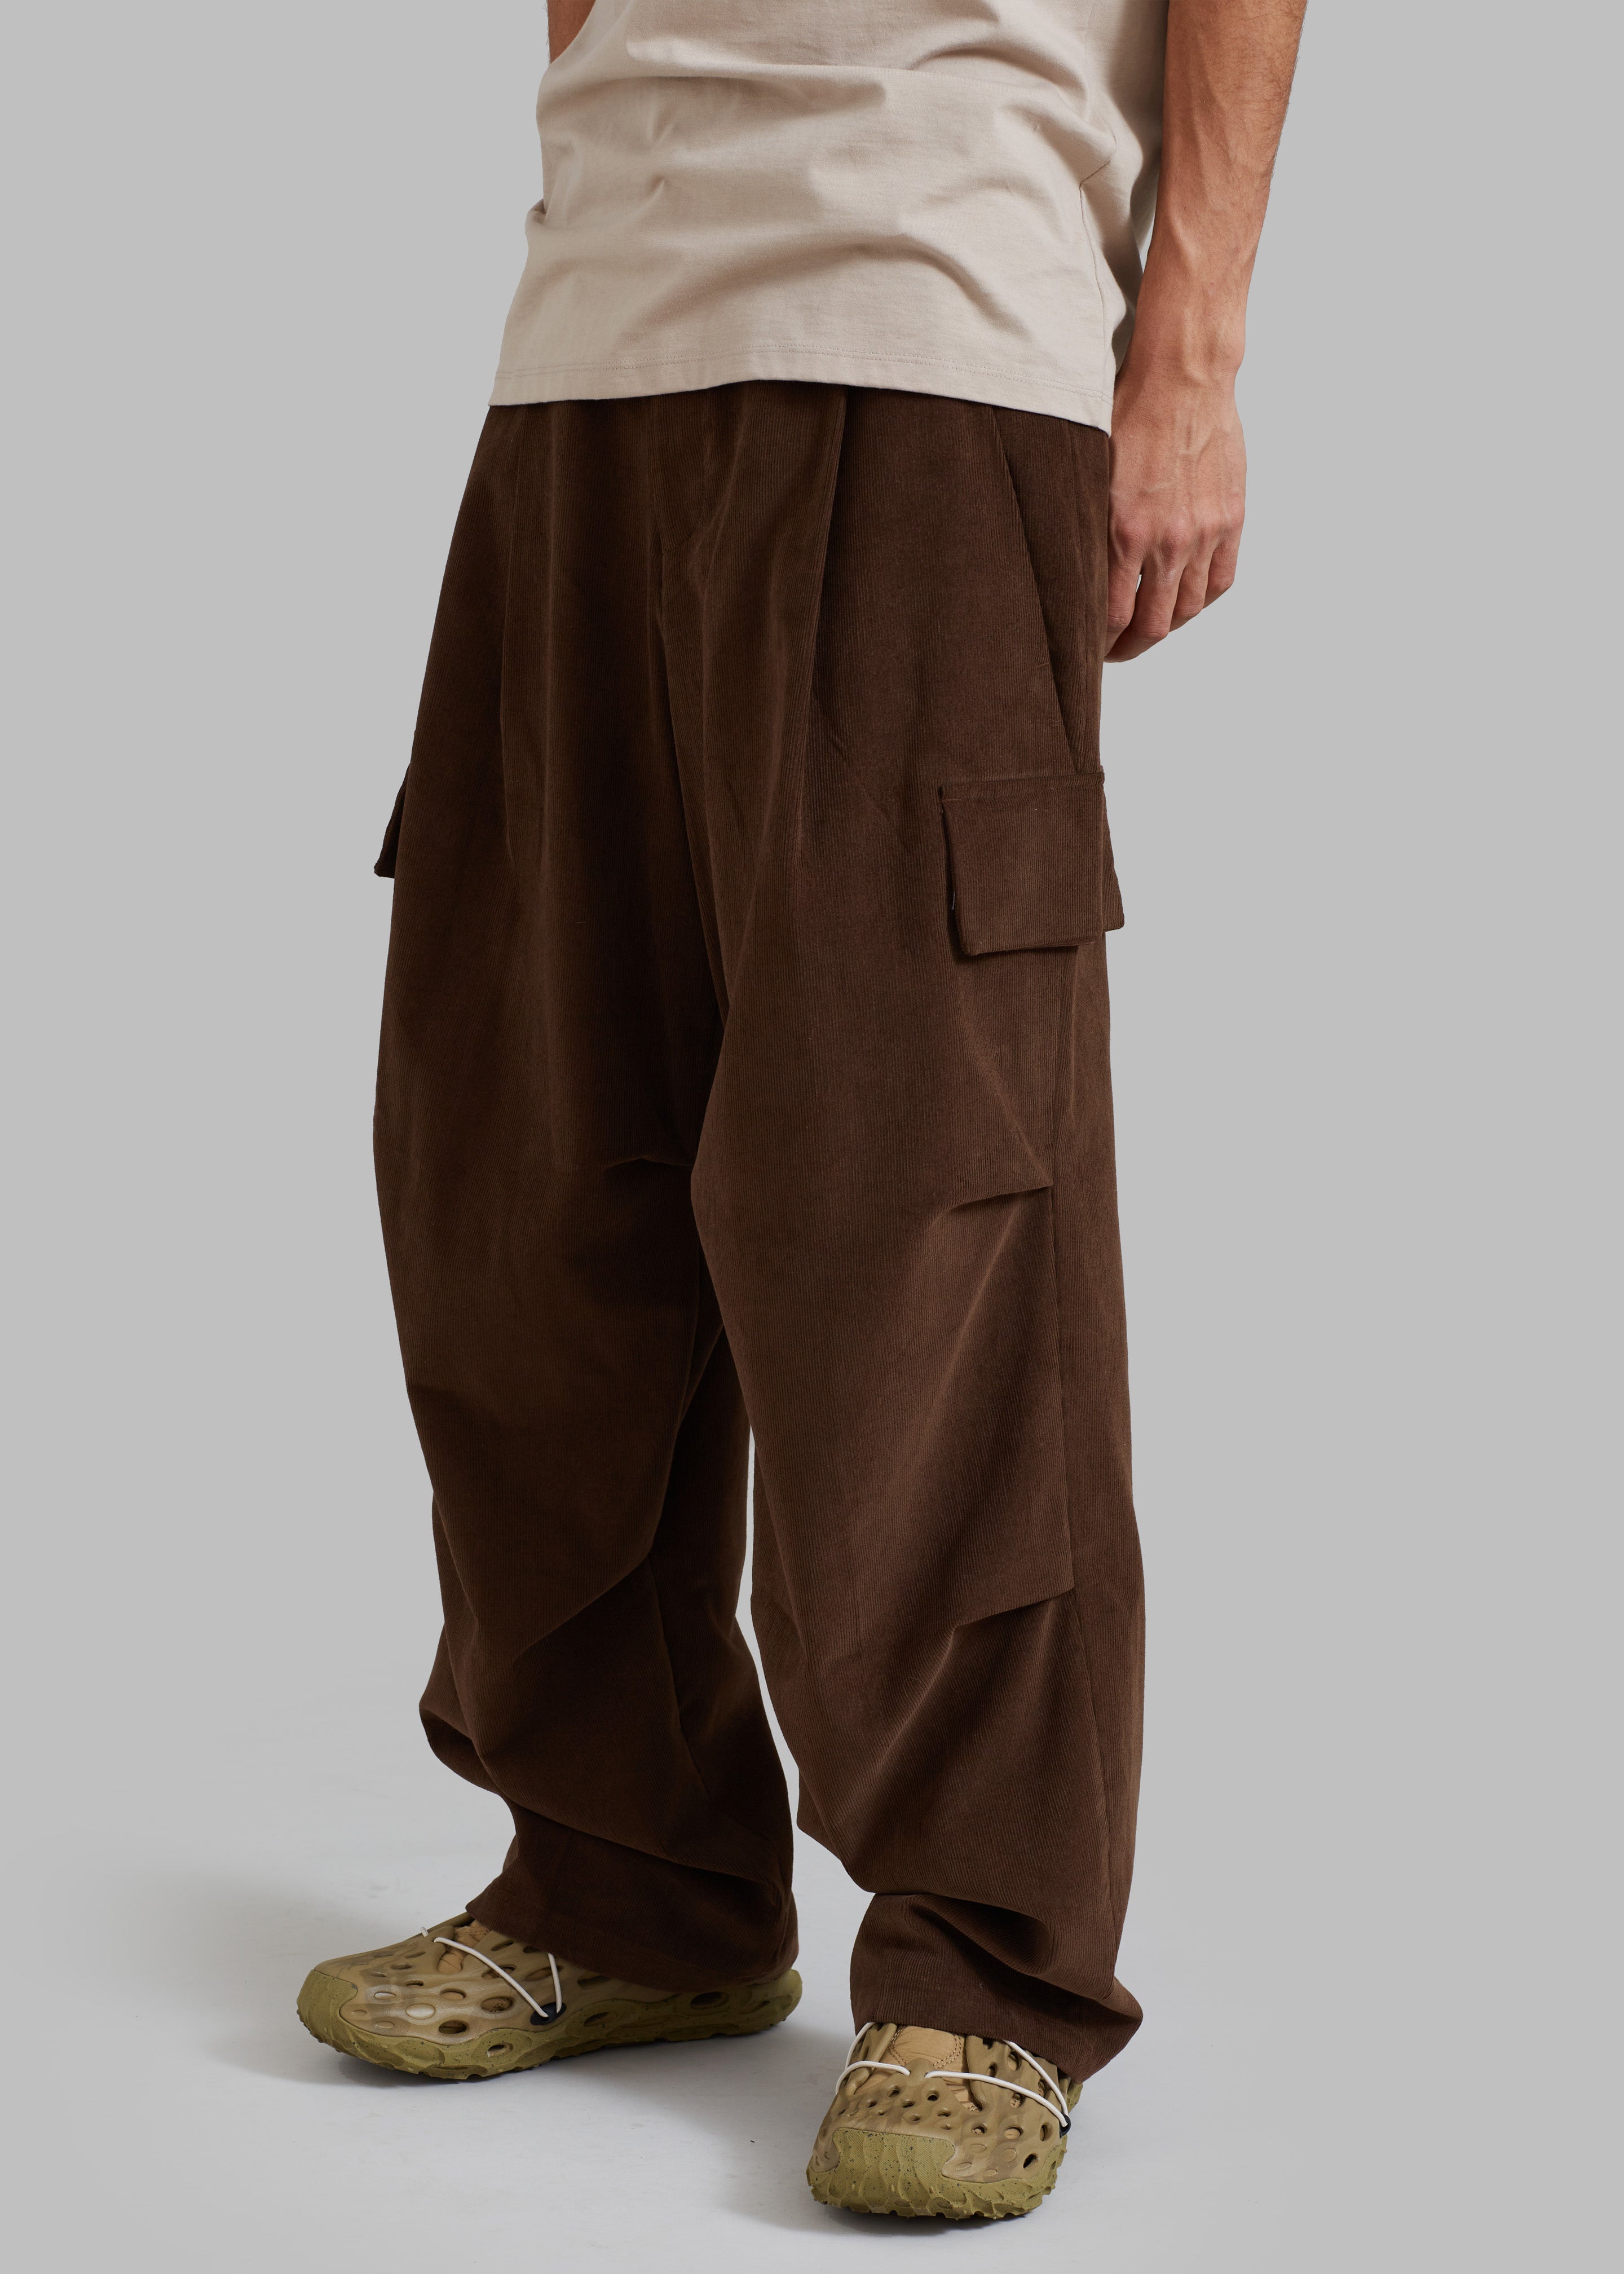 Garnett Corduroy Pants - Brown - 12 - Garnett Corduroy Pants - Brown [gender-male]